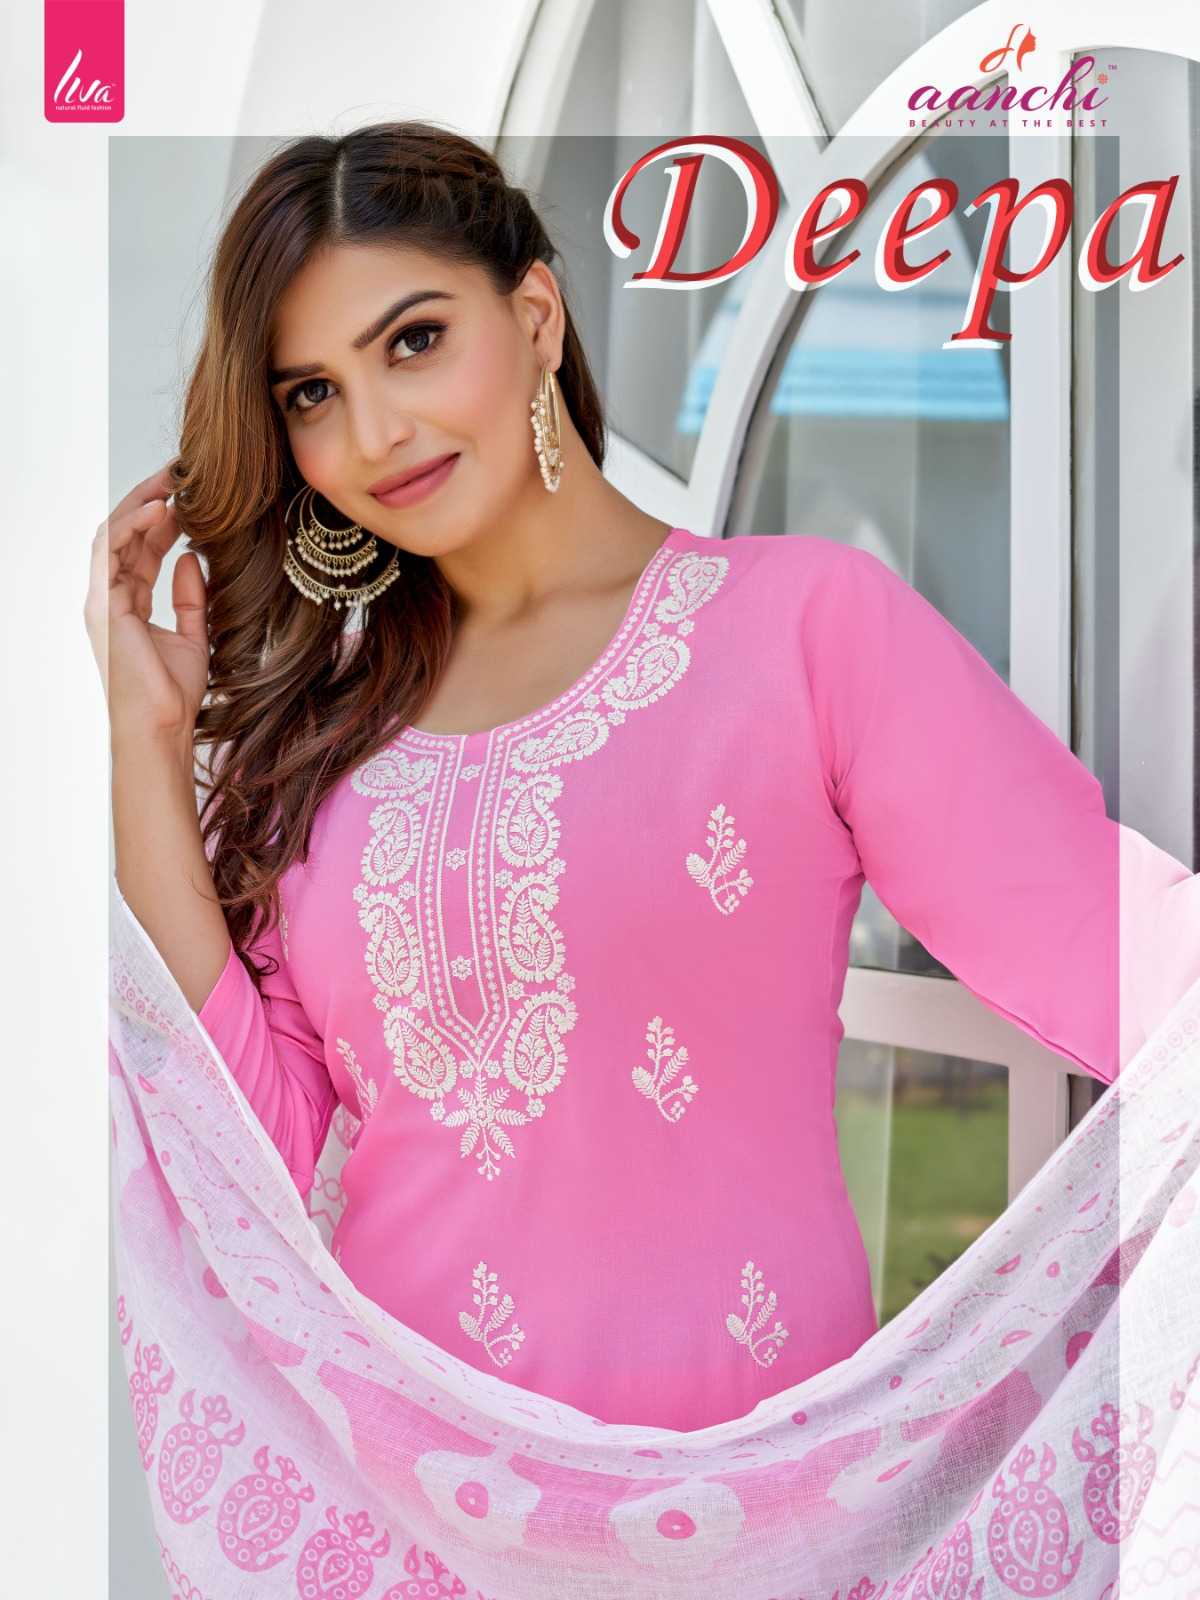 Aanchi Deepa Kurti Wholesale catalog